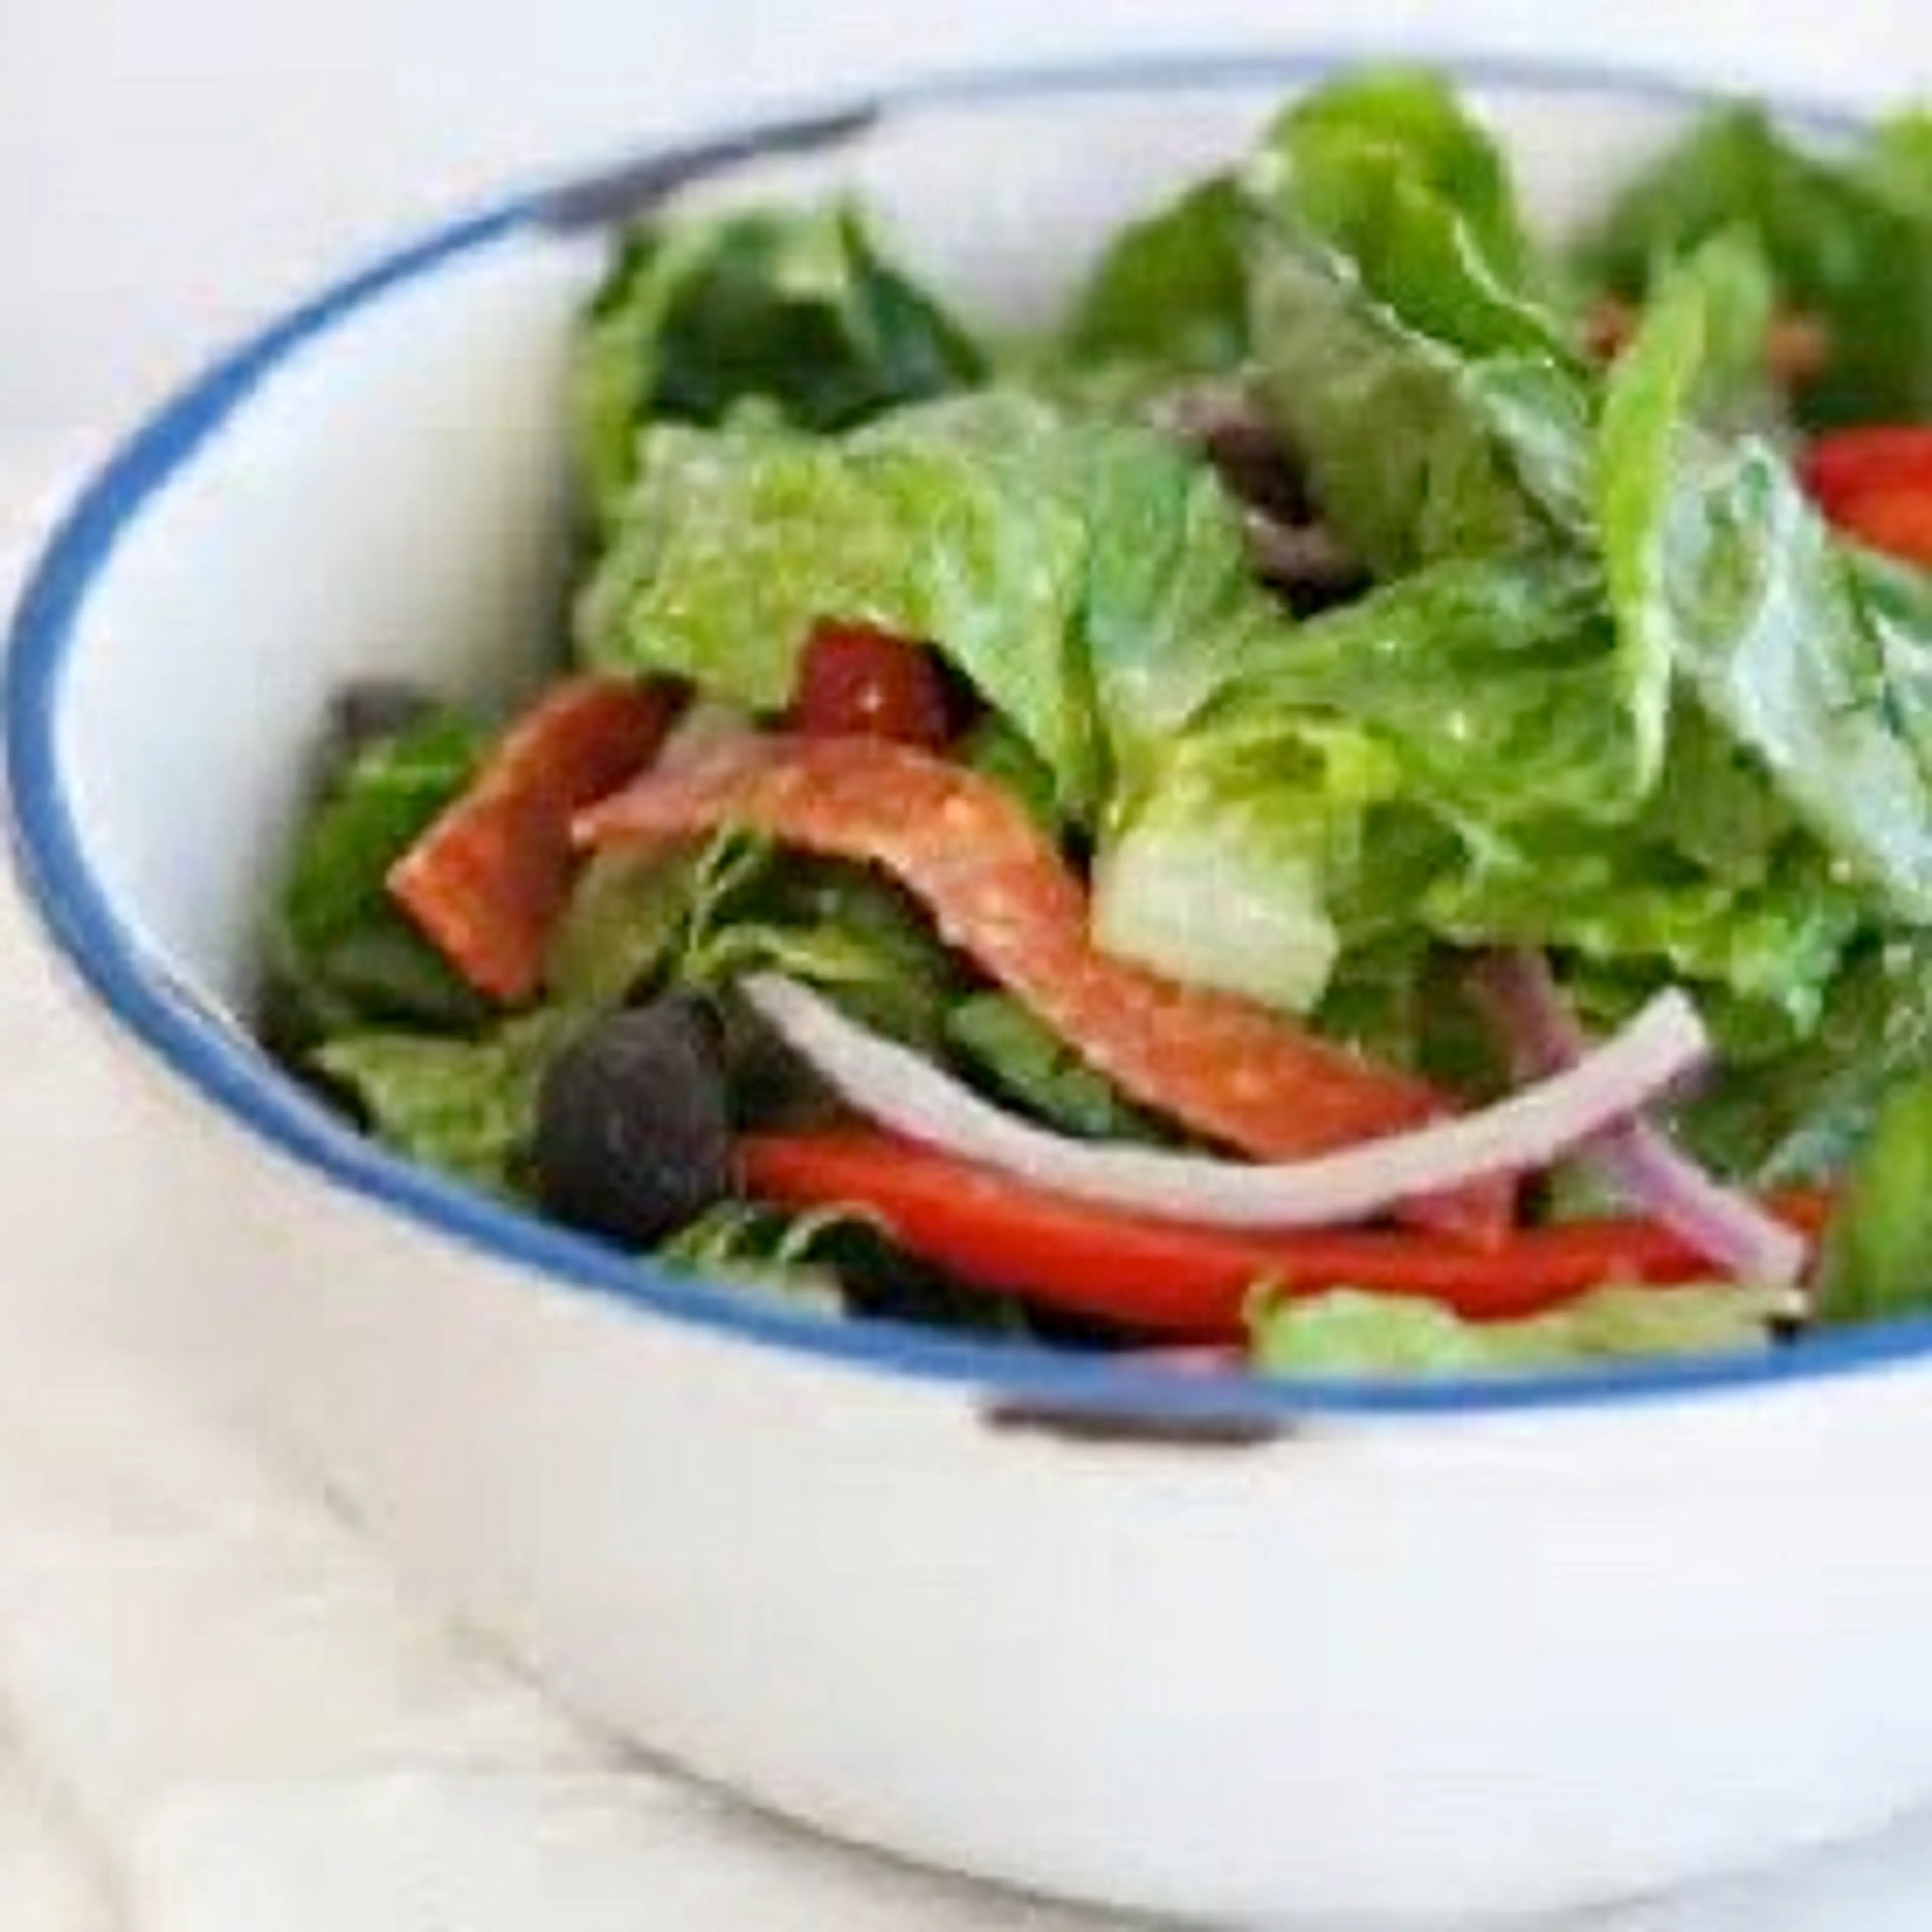 Helen's Tossed Salad